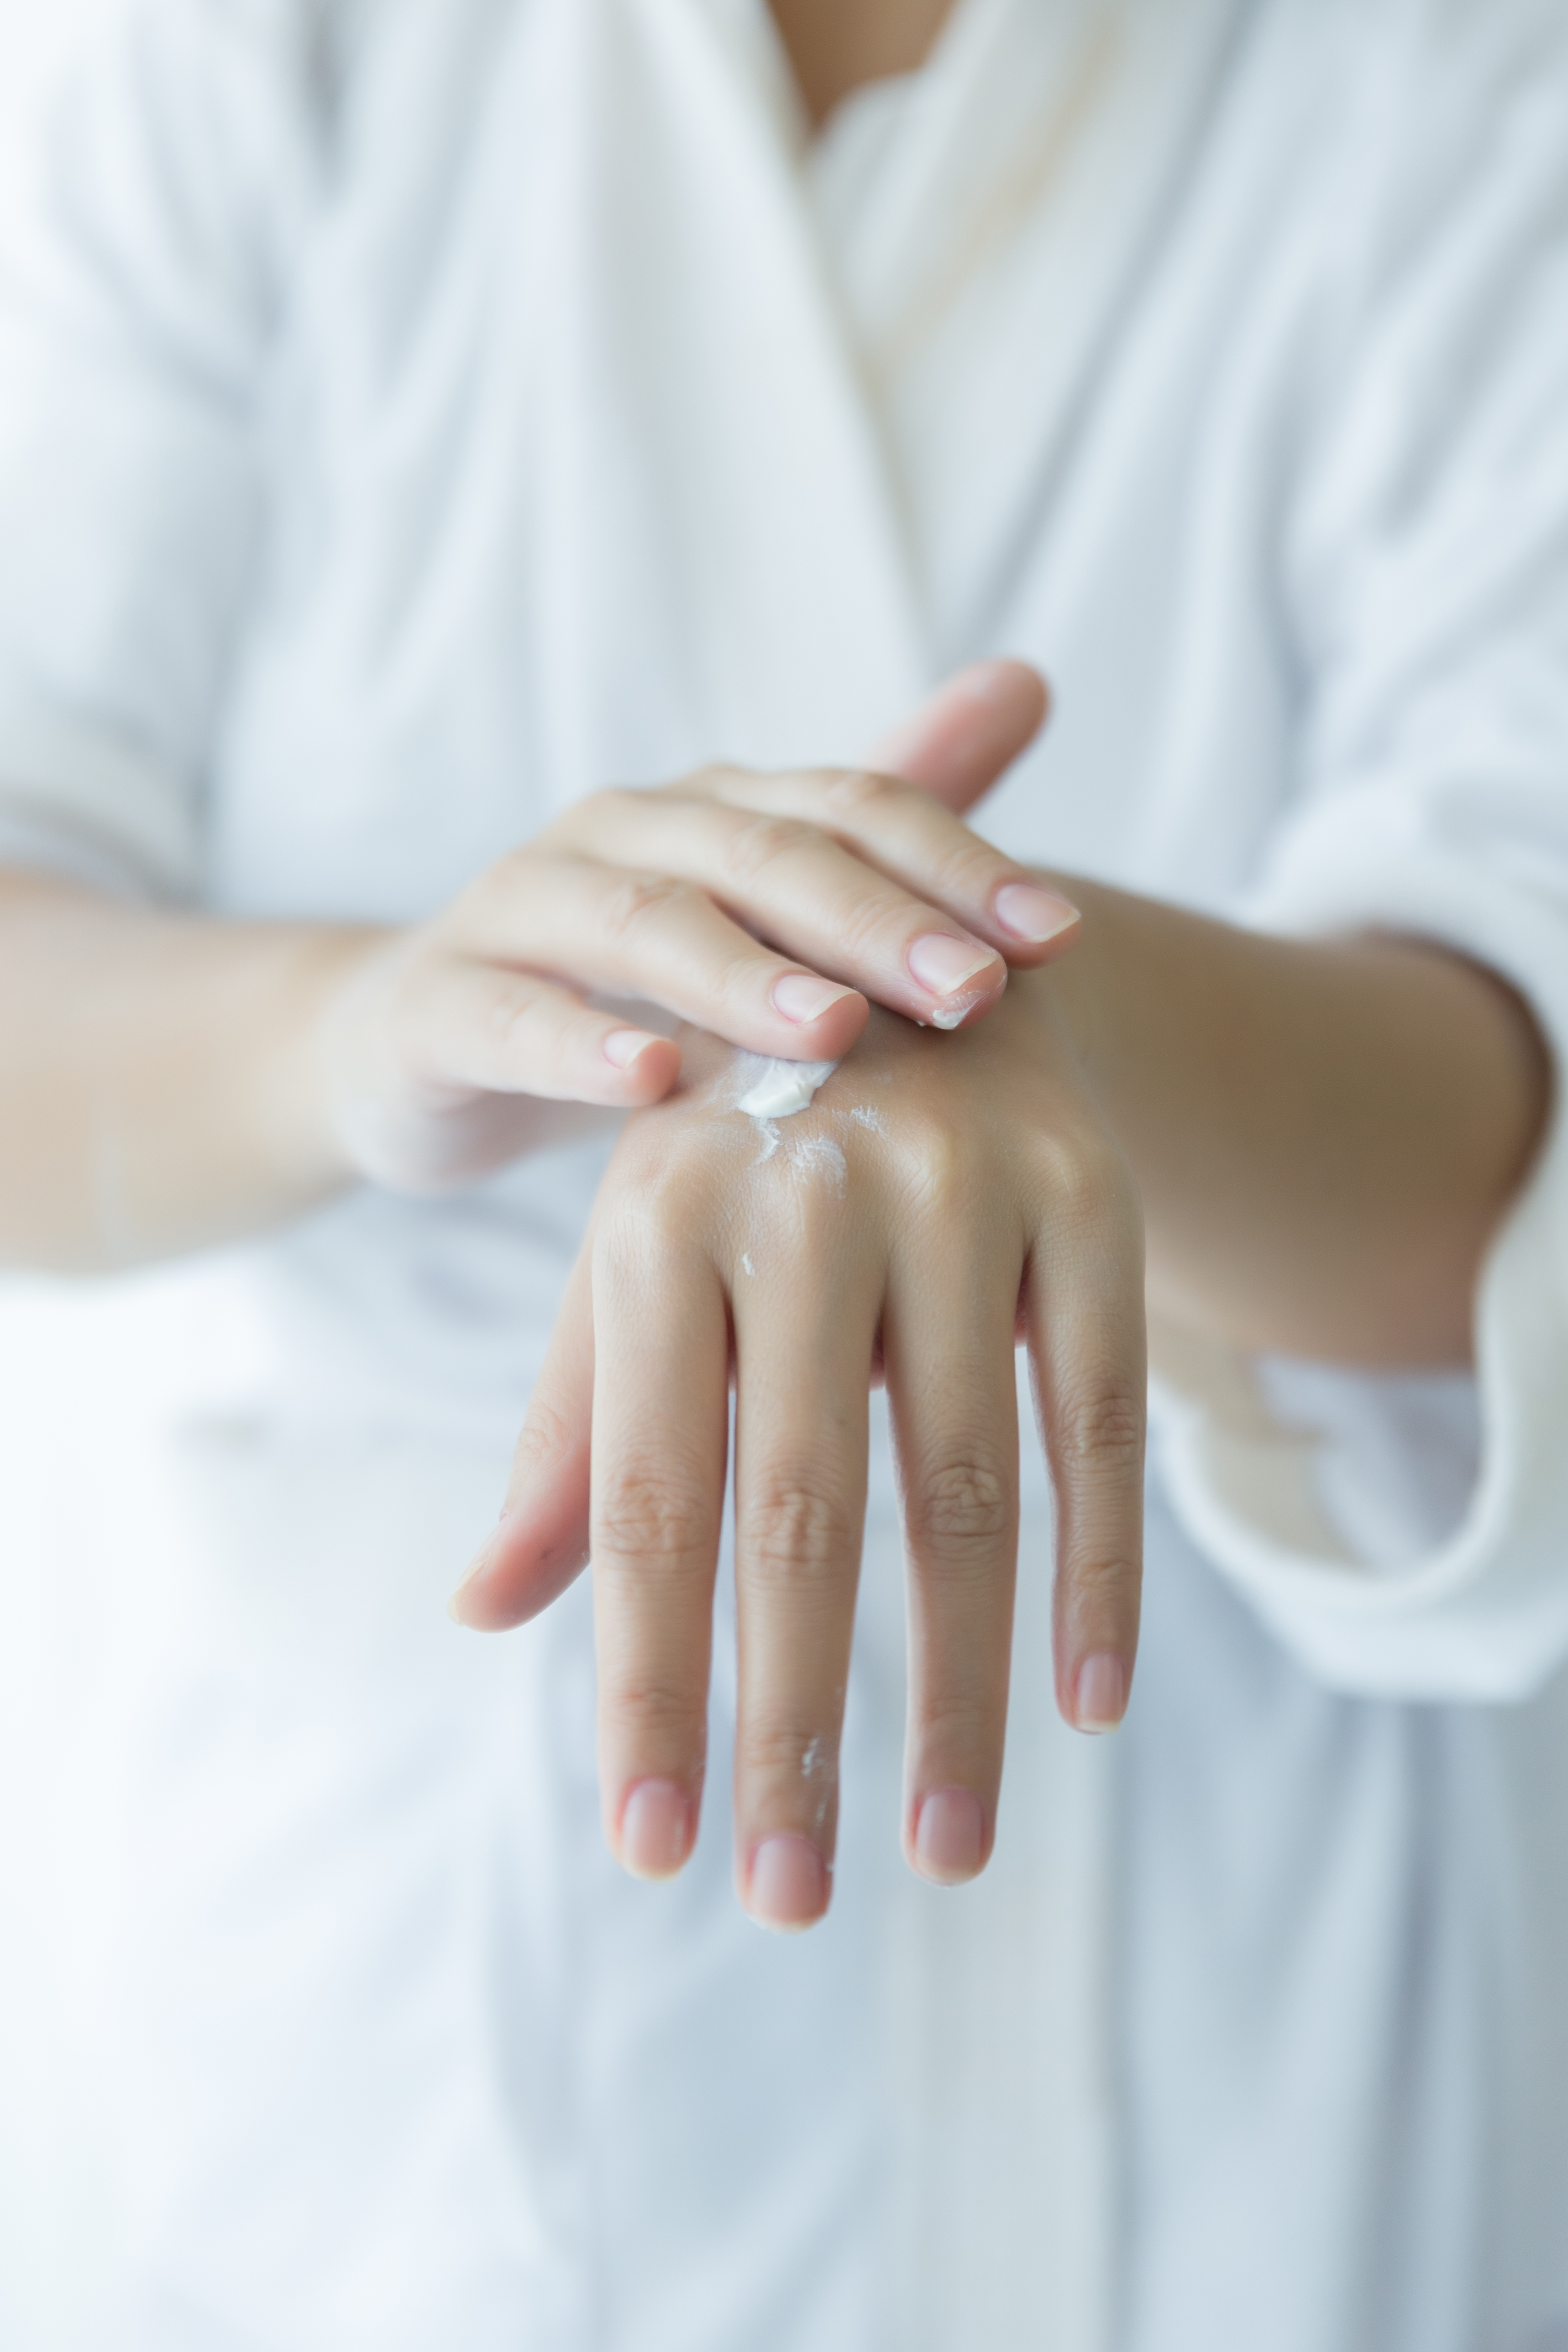 Когда крем не помогает: 5 способов справиться с сухостью рук в домашних условиях